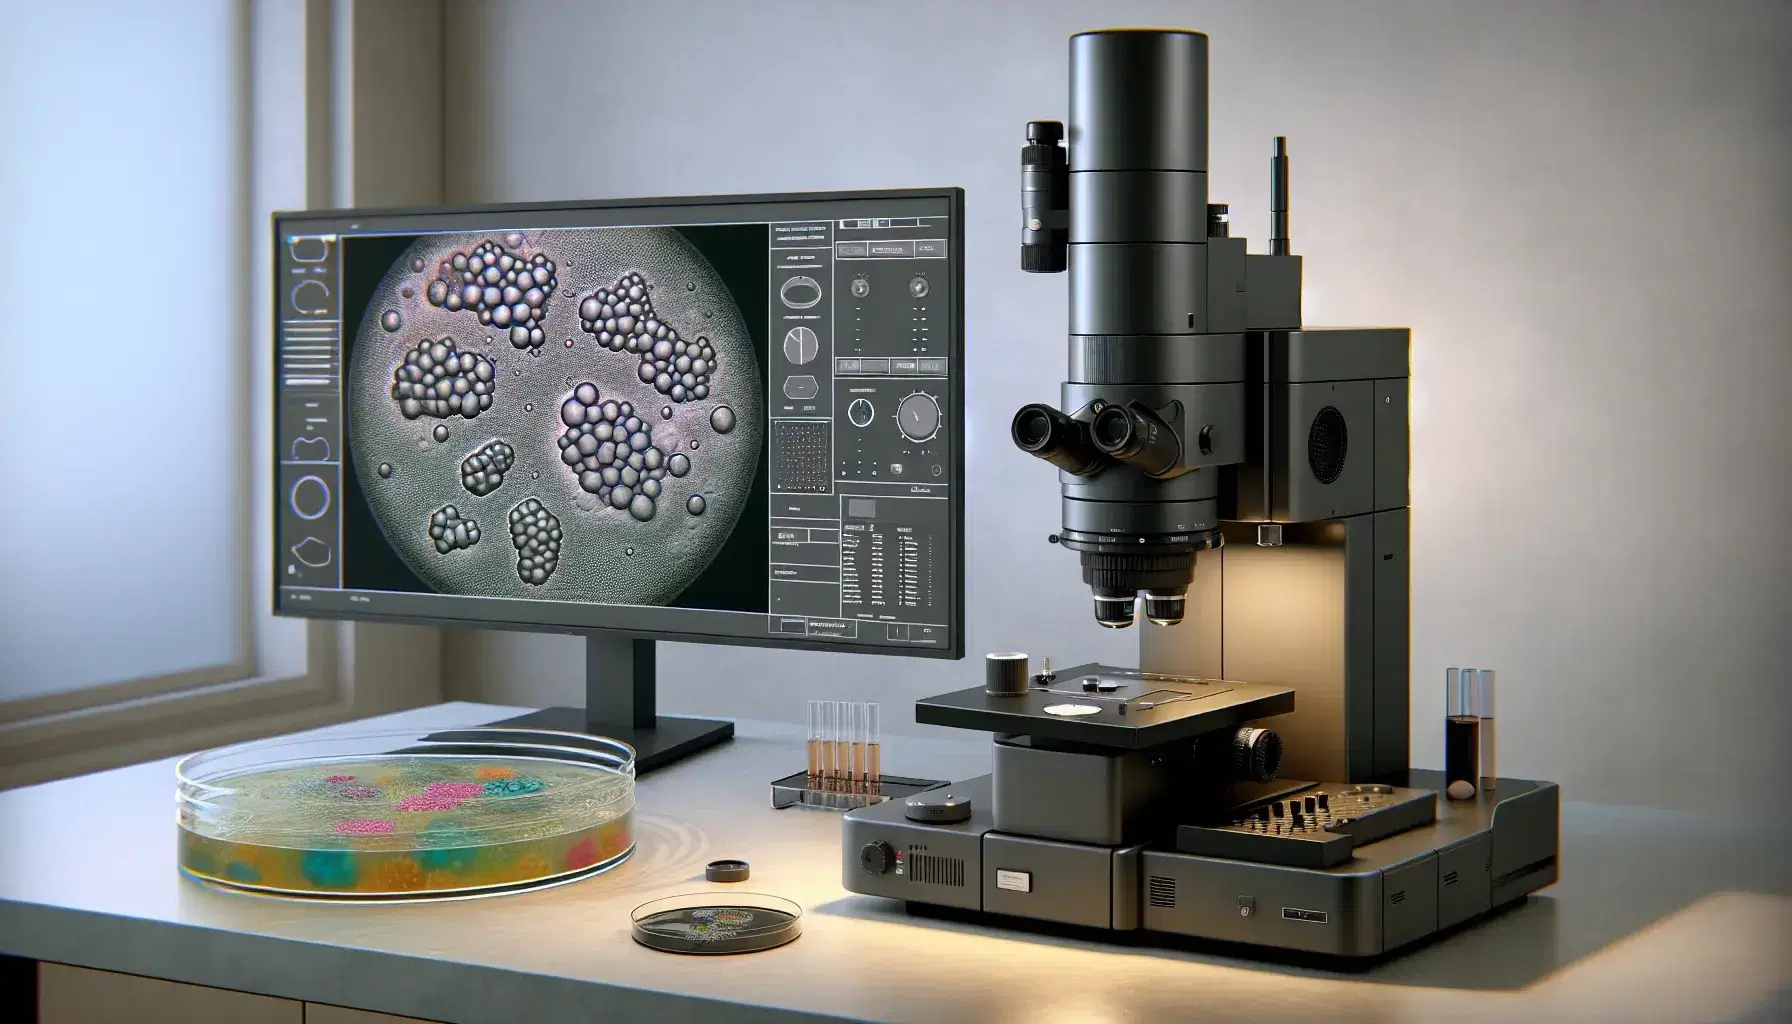 Microscopio elettronico a trasmissione in laboratorio con campioni biologici in Petri, schermo computer mostra struttura cellulare colorata.